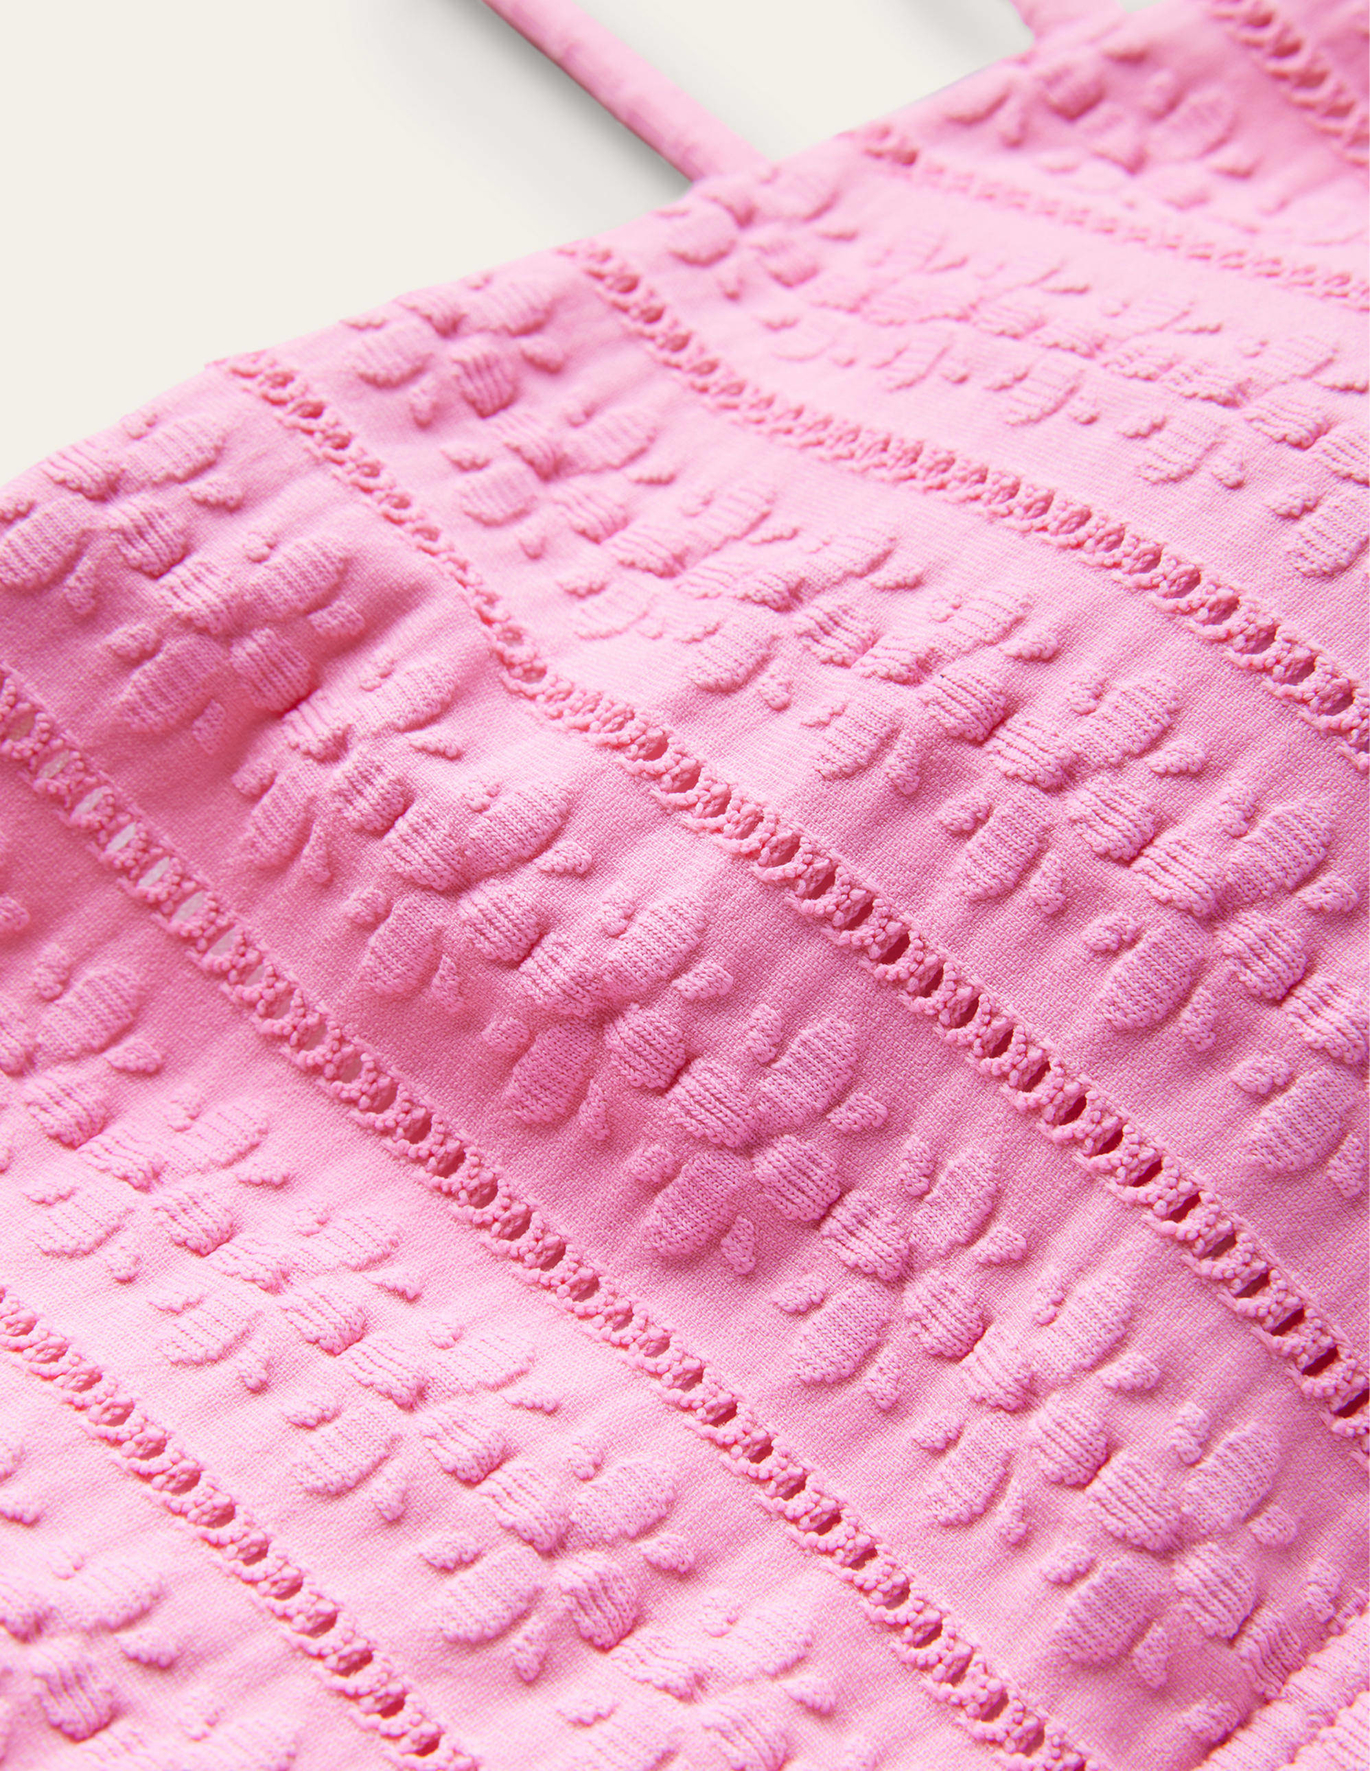 보덴 Boden Skinny Strap Bikini Top - Candy Floss Pink Texture